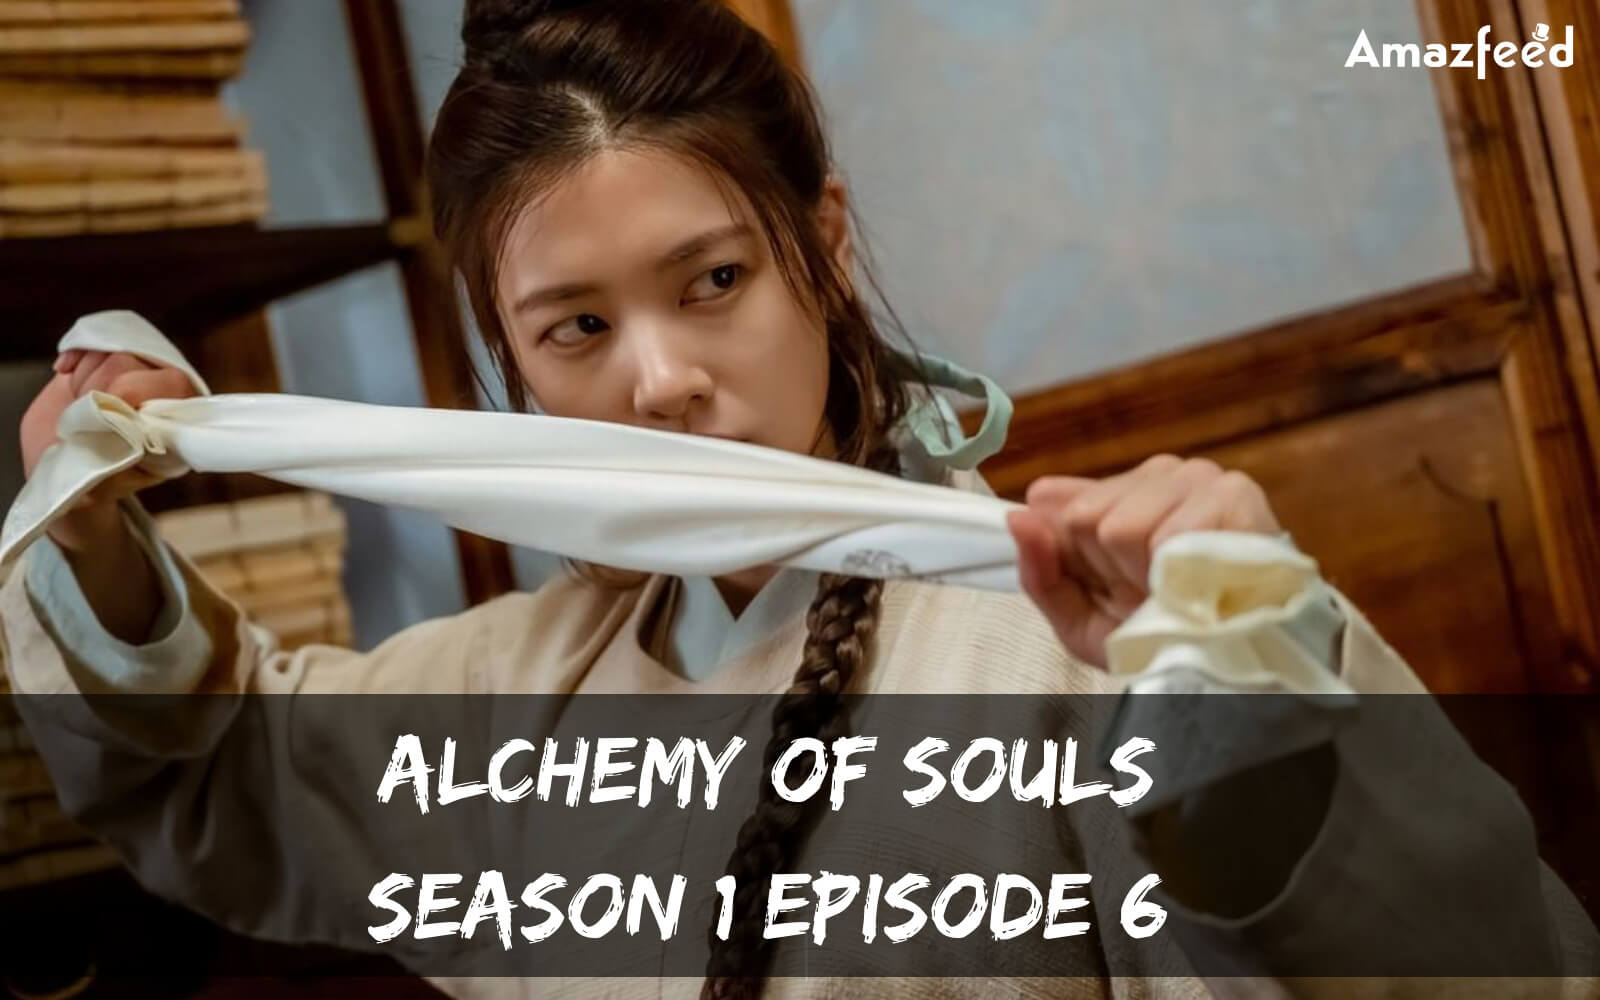 Alchemy of Souls season 1 Episode 6 release date